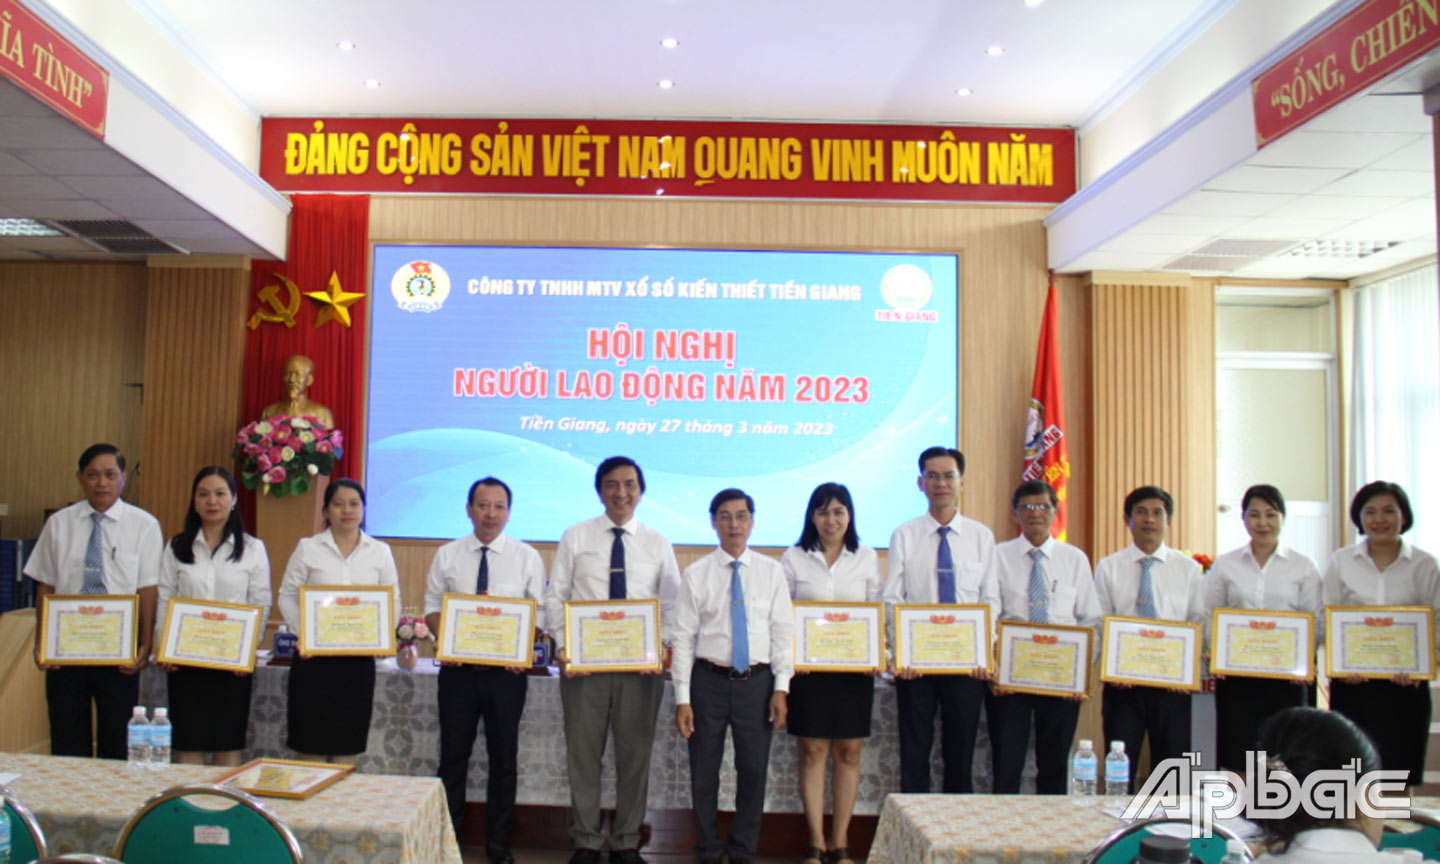 Ông Trần Văn An, Giám đốc Công ty trao Giấy khen của Công ty cho các cá nhân đạt thành tích hoàn thành xuất sắc nhiệm vụ năm 2022.